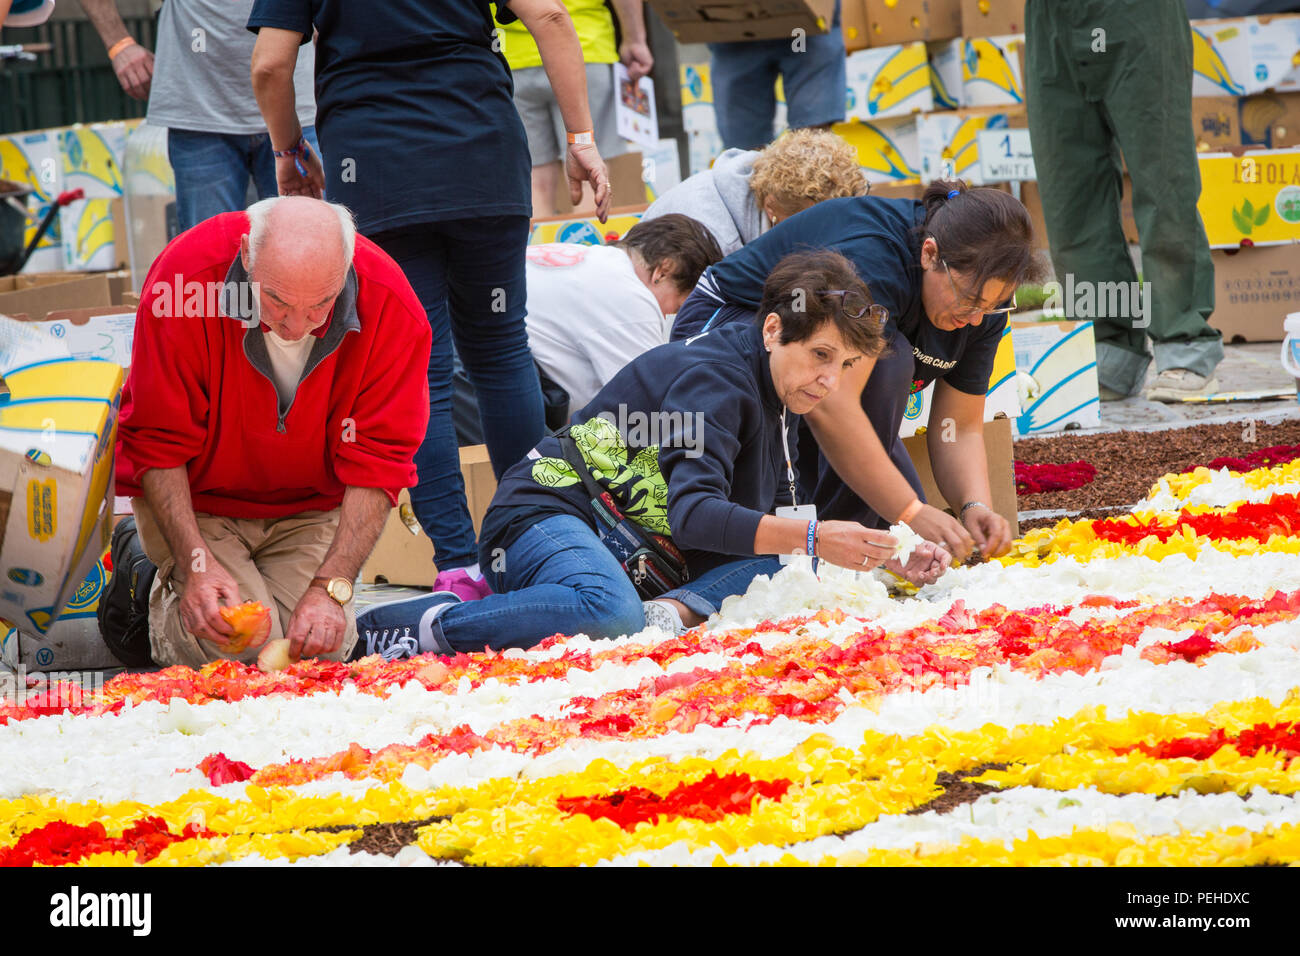 Brüssel, Belgien. 16. Aug 2018. Alle 2 Jahre die Grand-Place in Brüssel ist mit einer Blume Teppich bedeckt. Das Thema 2018 ist Mexiko die Blume Teppich zu Guanajuato einen mexikanischen Region gewidmet ist. Credit: Steven roe/Alamy leben Nachrichten Stockfoto